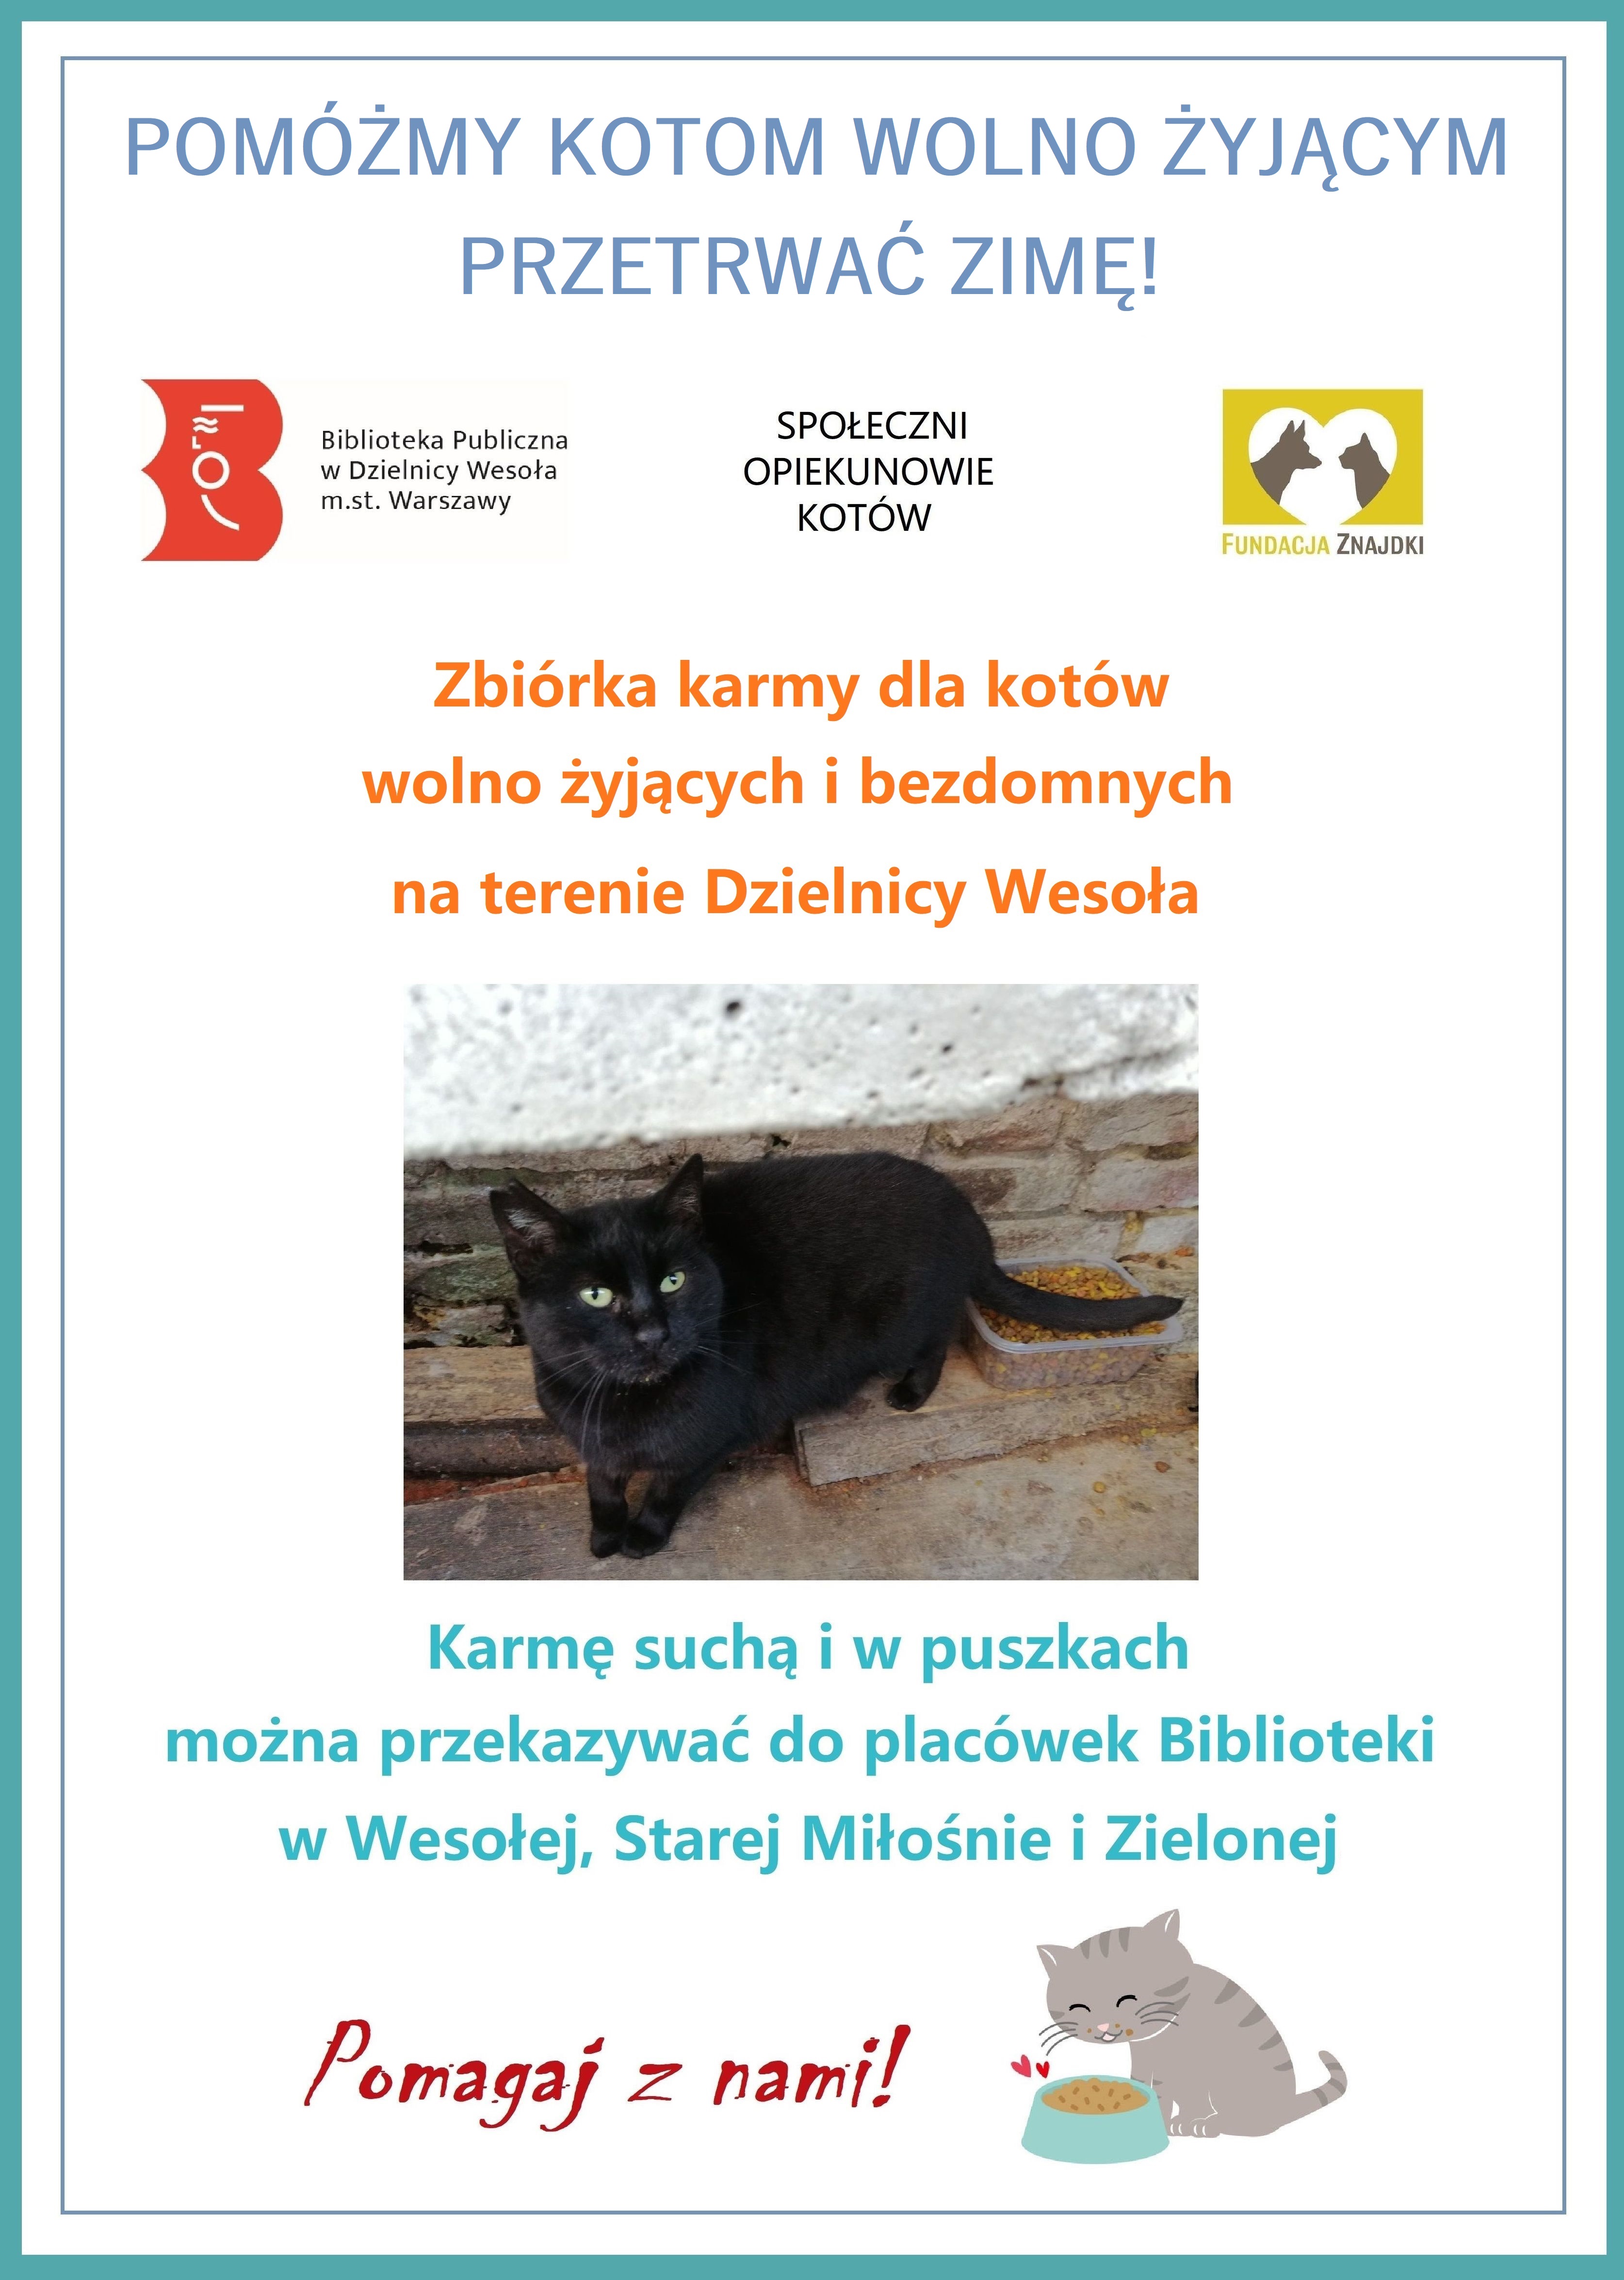 Plakat promujący zbiórkę karmy dla kotów wolno żyjących i bezdomnych w dzielnicy Wesoła.